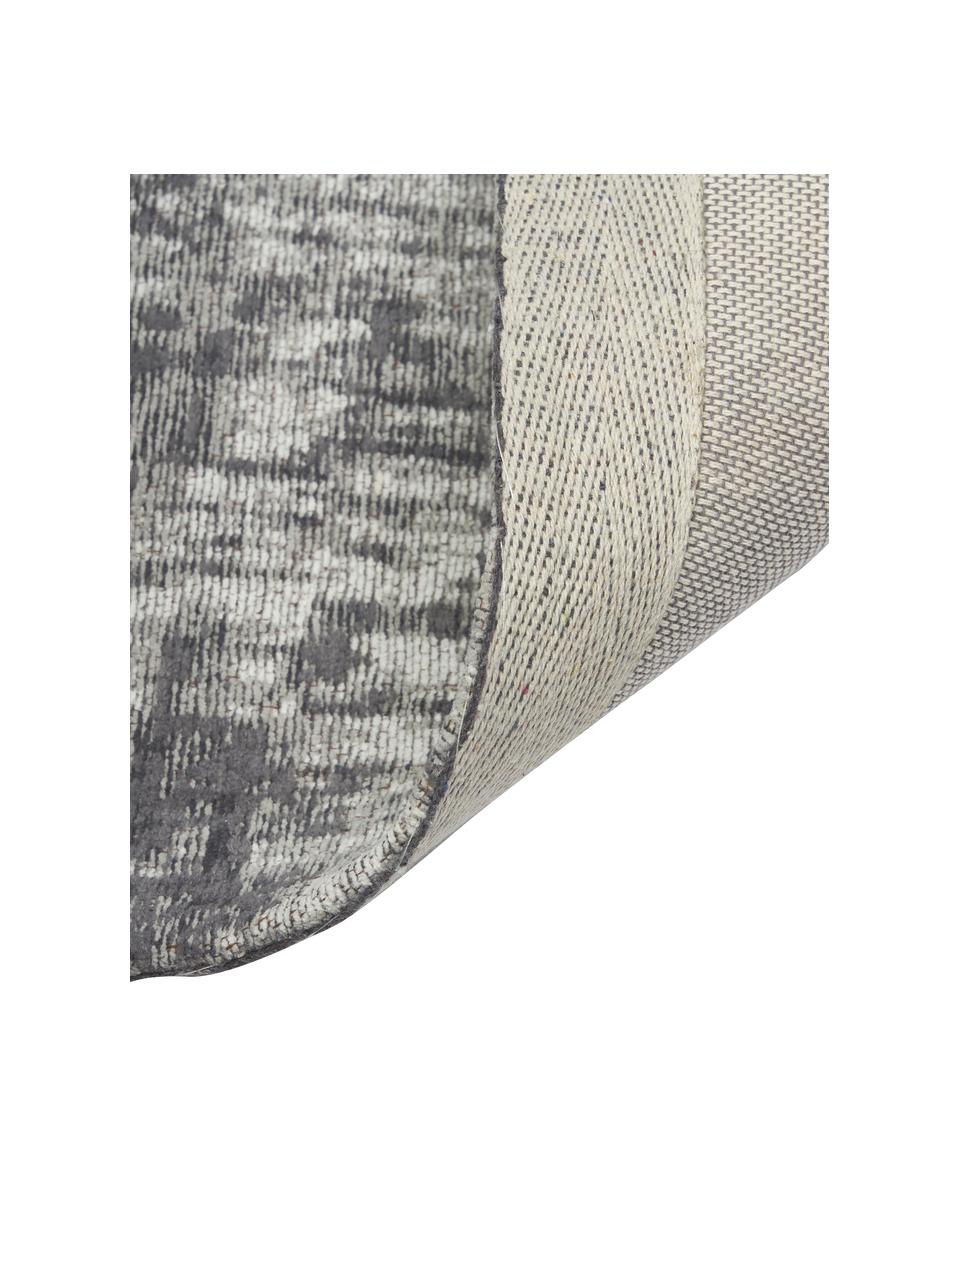 Tapis de couloir vintage coton tissé main Luise, Tons gris et blancs, larg. 80 x long. 250 cm